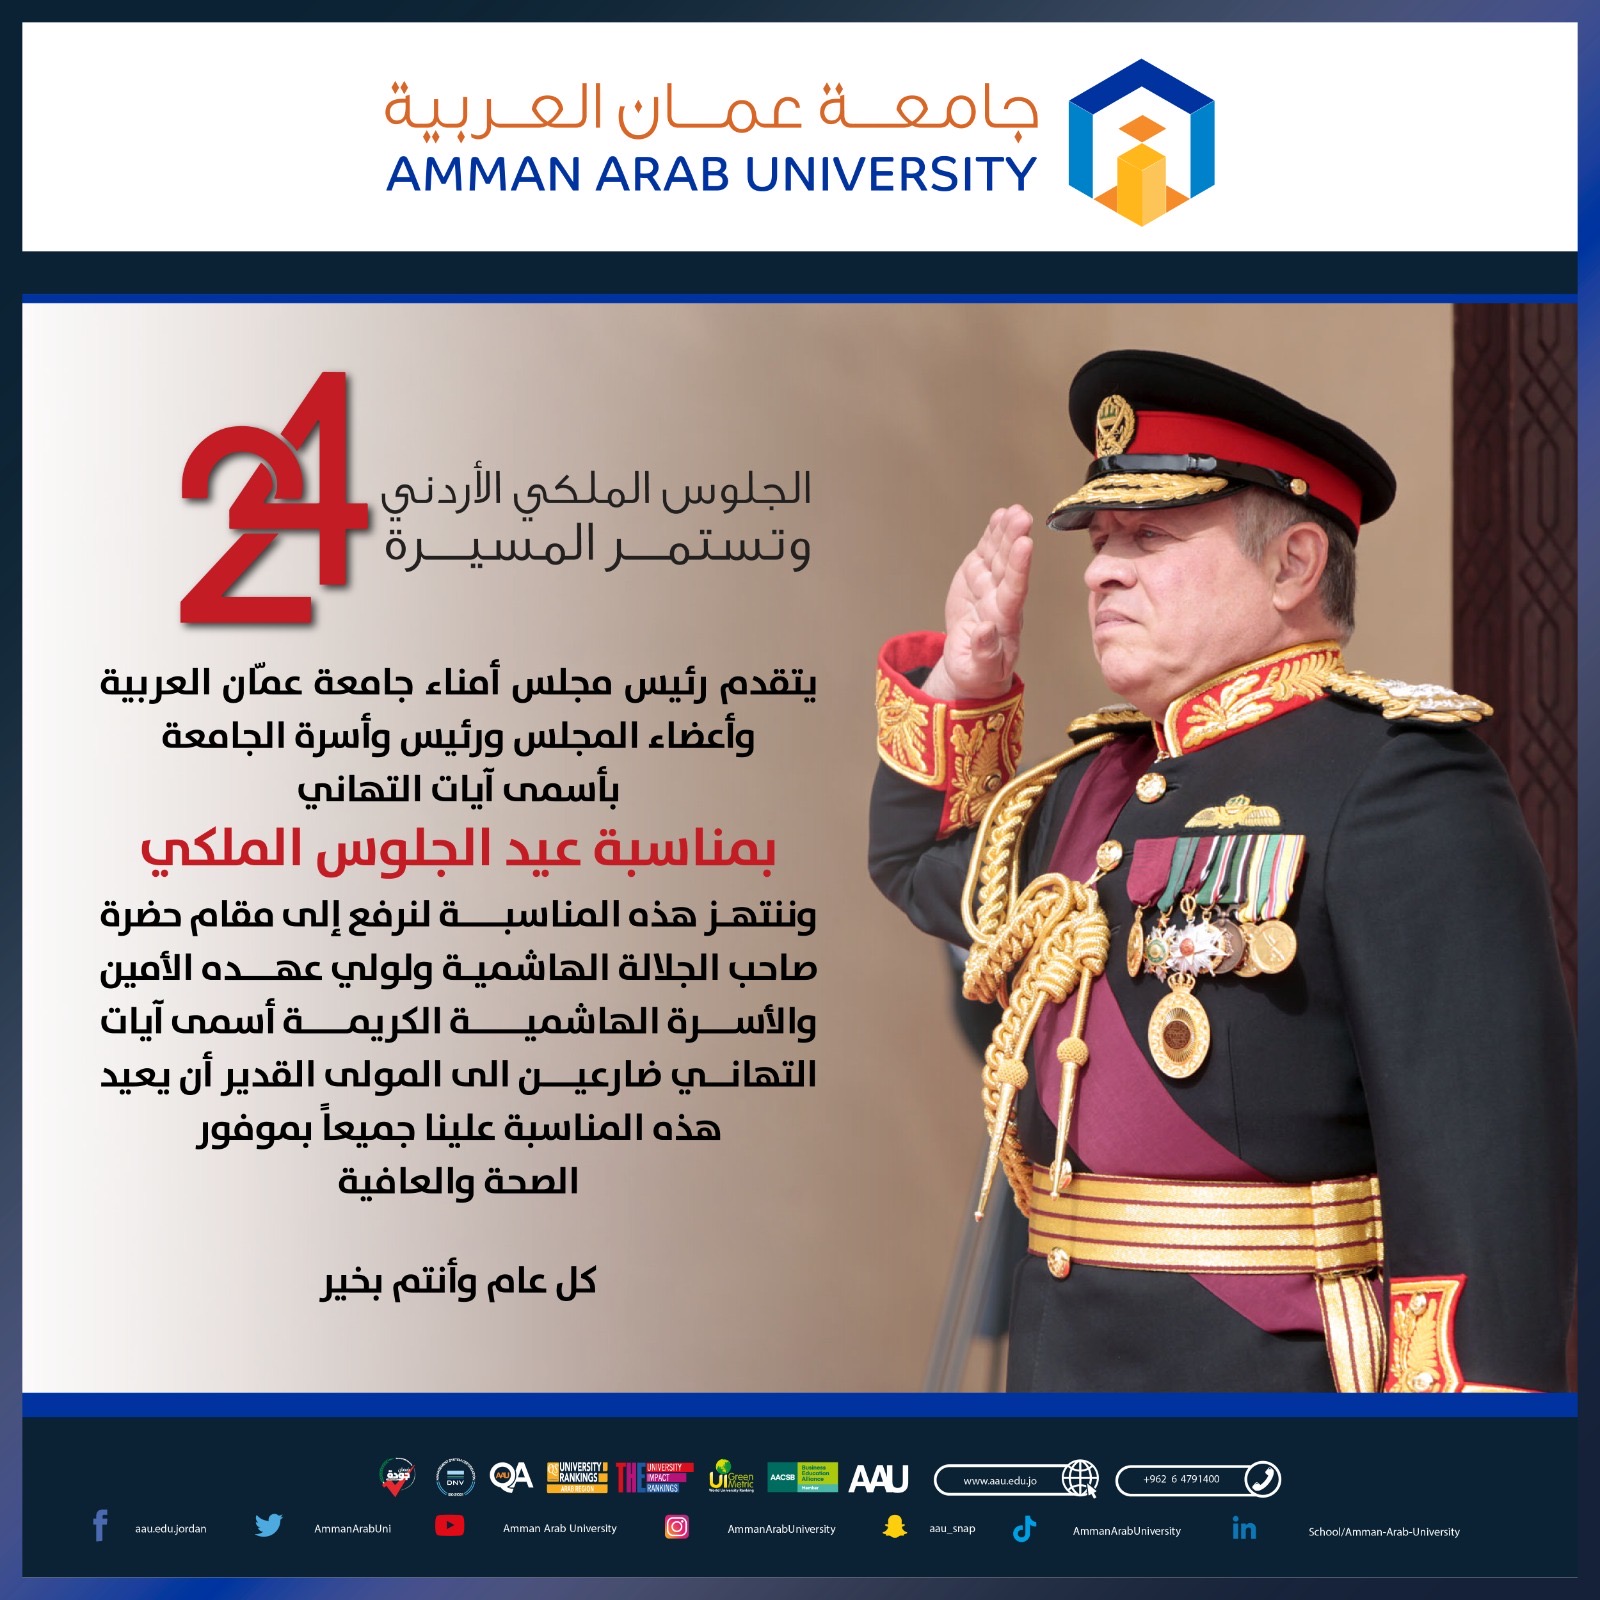 جامعة عمّان العربية تهنئ بمناسبة عيد الجلوس الملكي الأردني وتستمر المسيرة